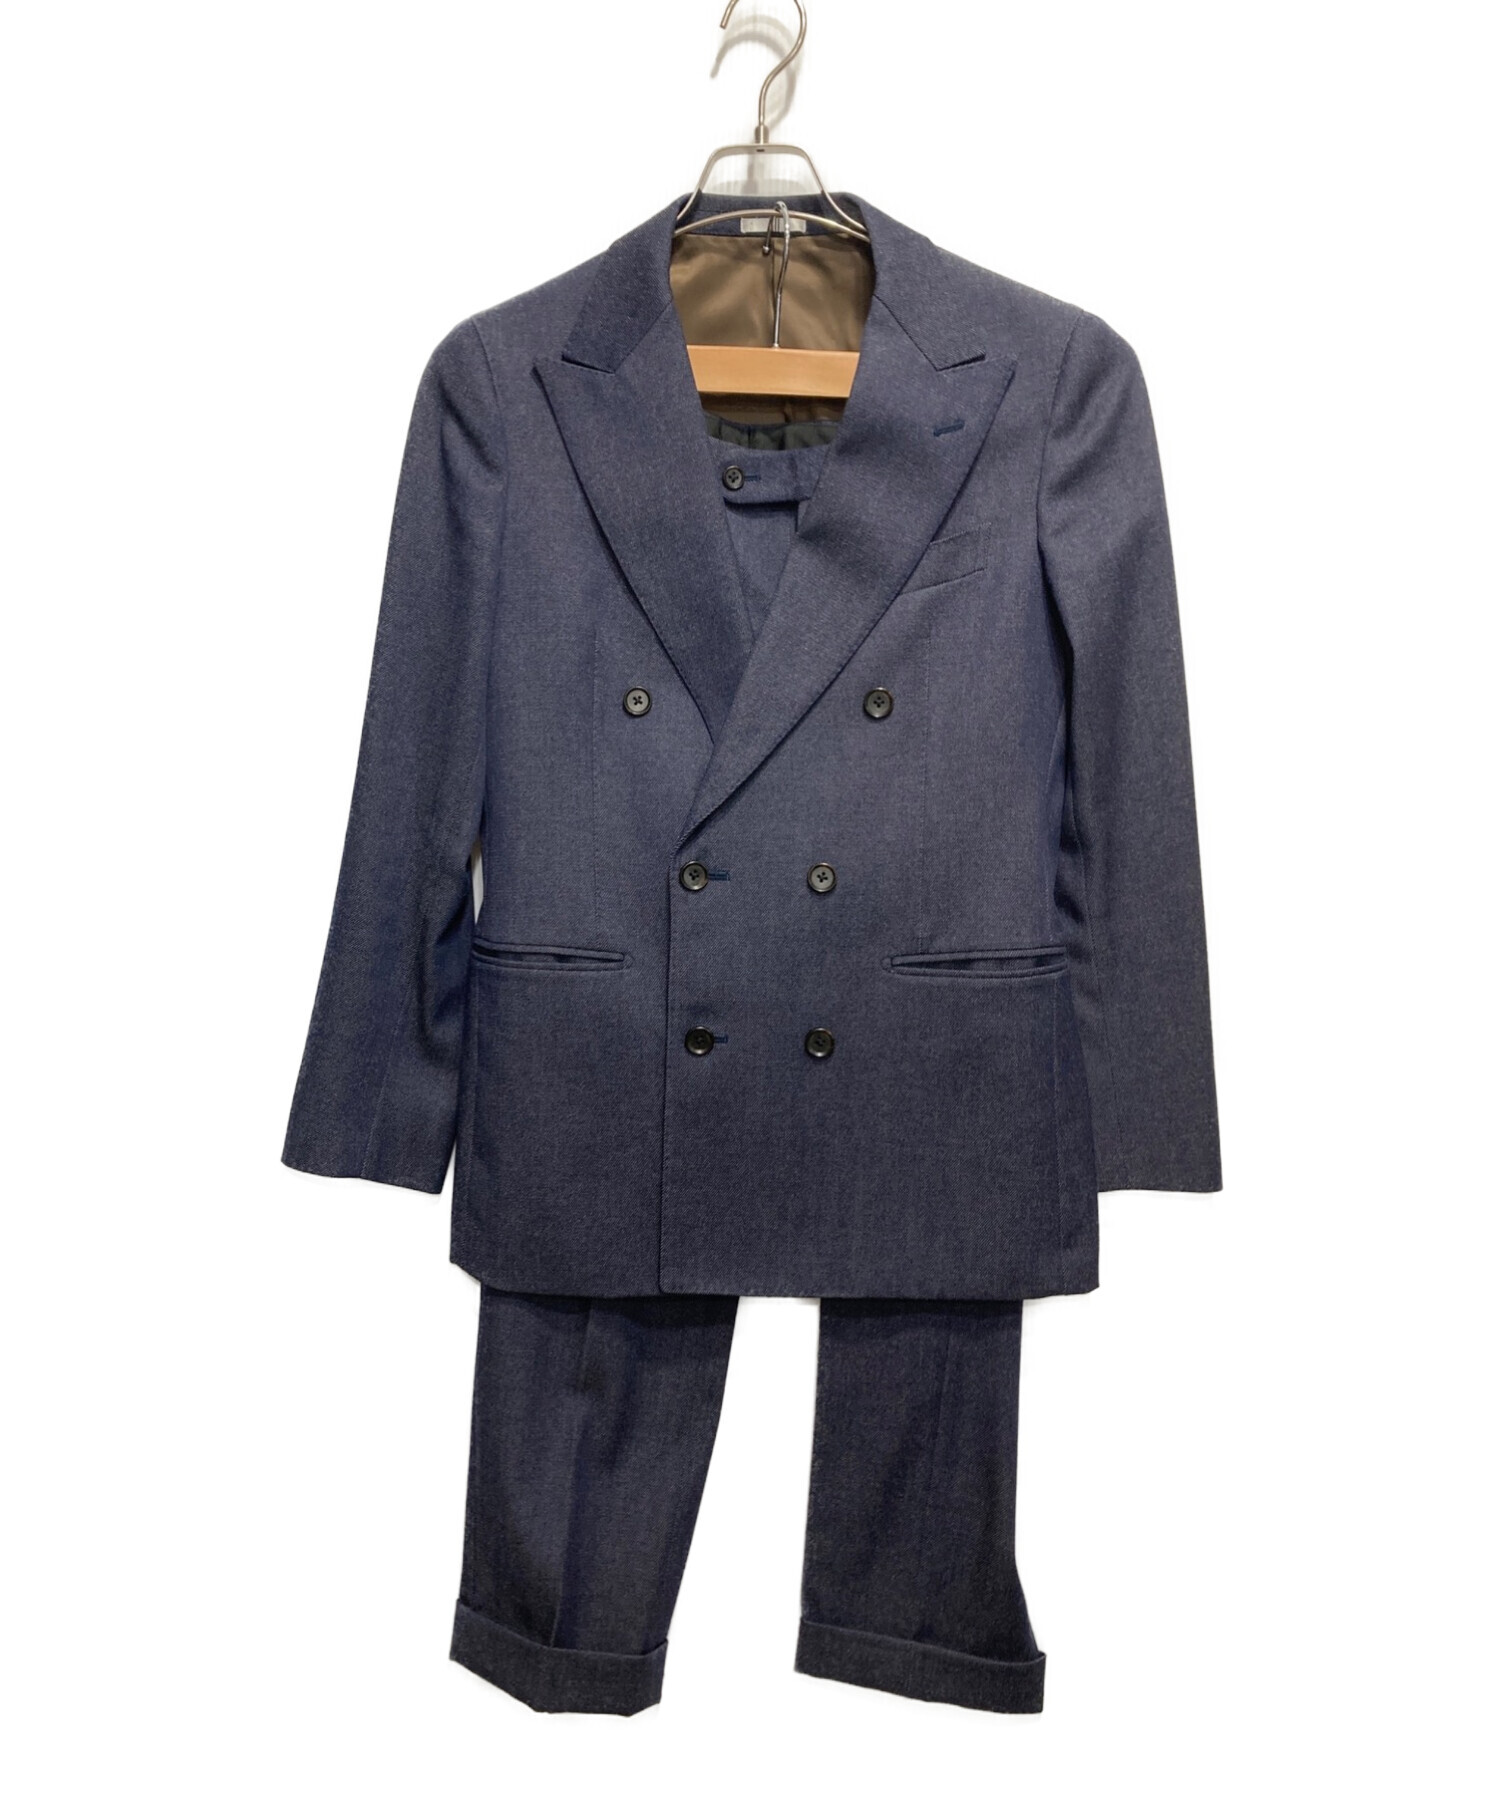 SUIT SELECT スーツセレクト 3点セットアップ ネイビー - スーツ 